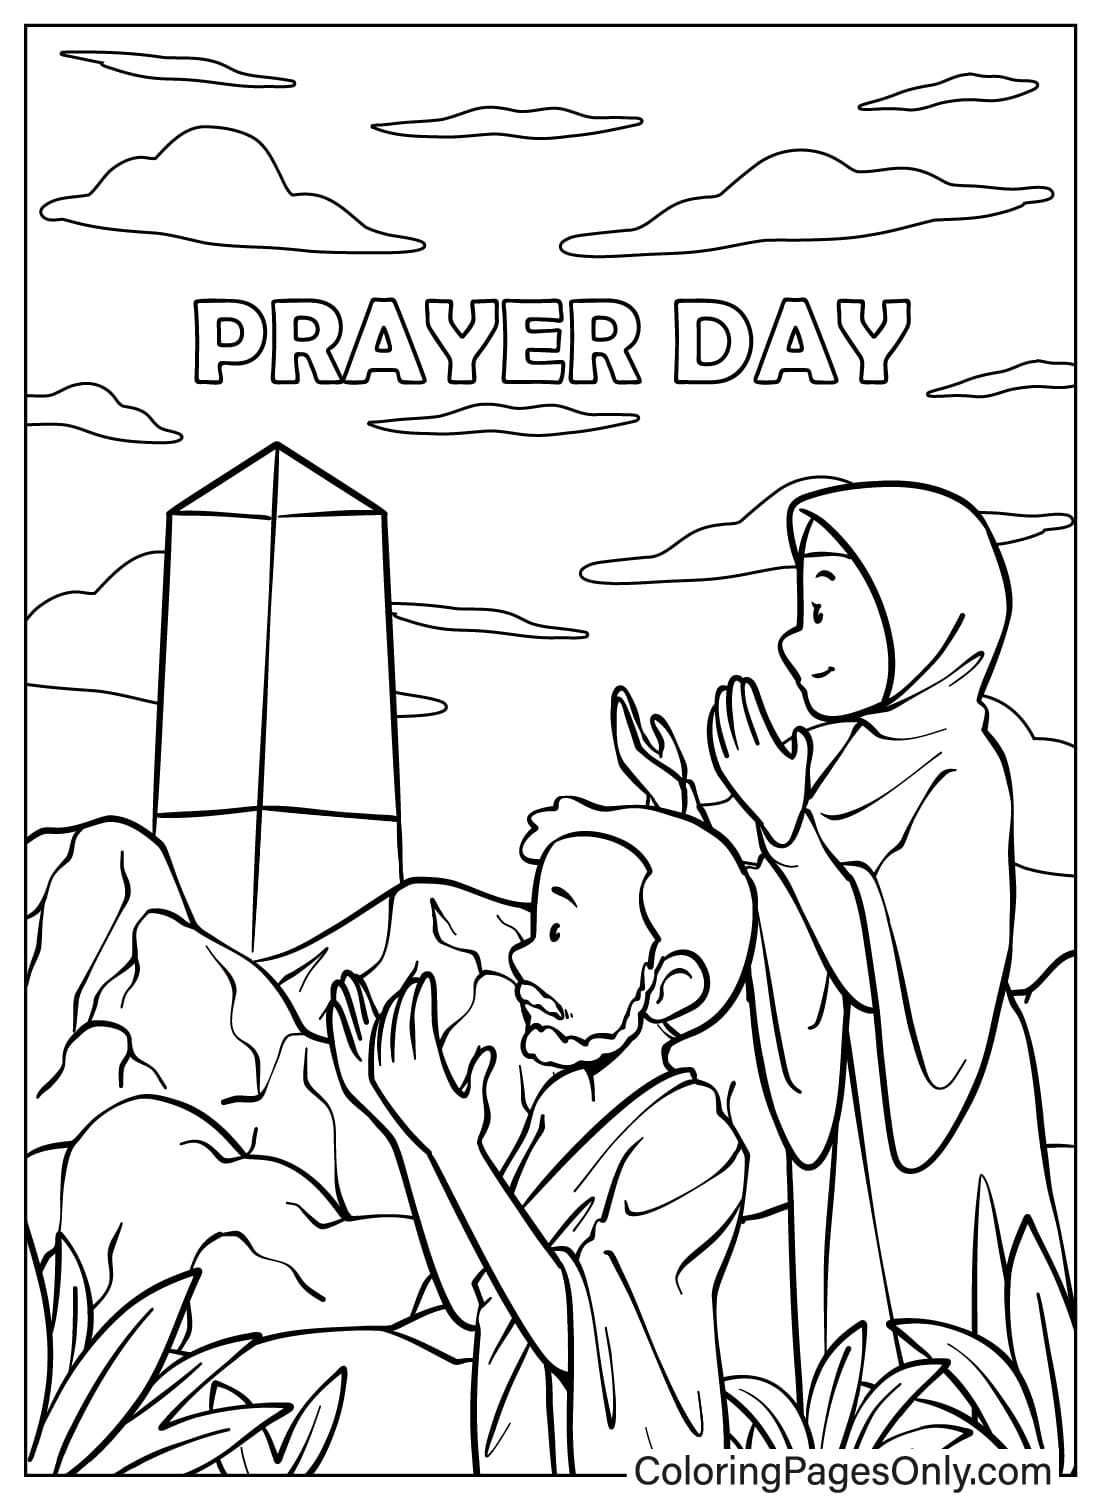 Mann und Frau beten vom Gebetstag aus